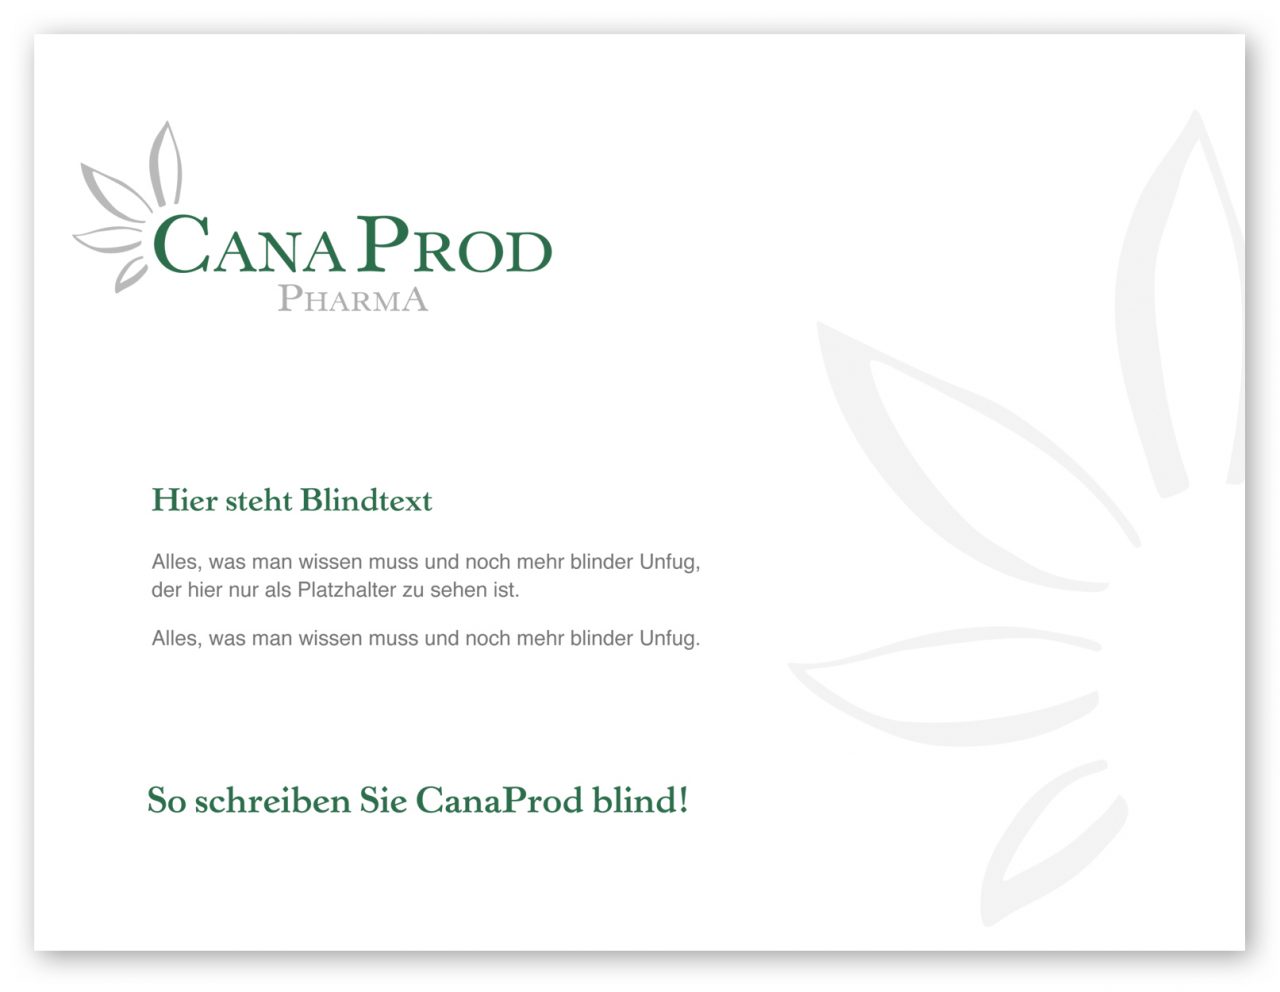 canadpro • CanaProd Pharma